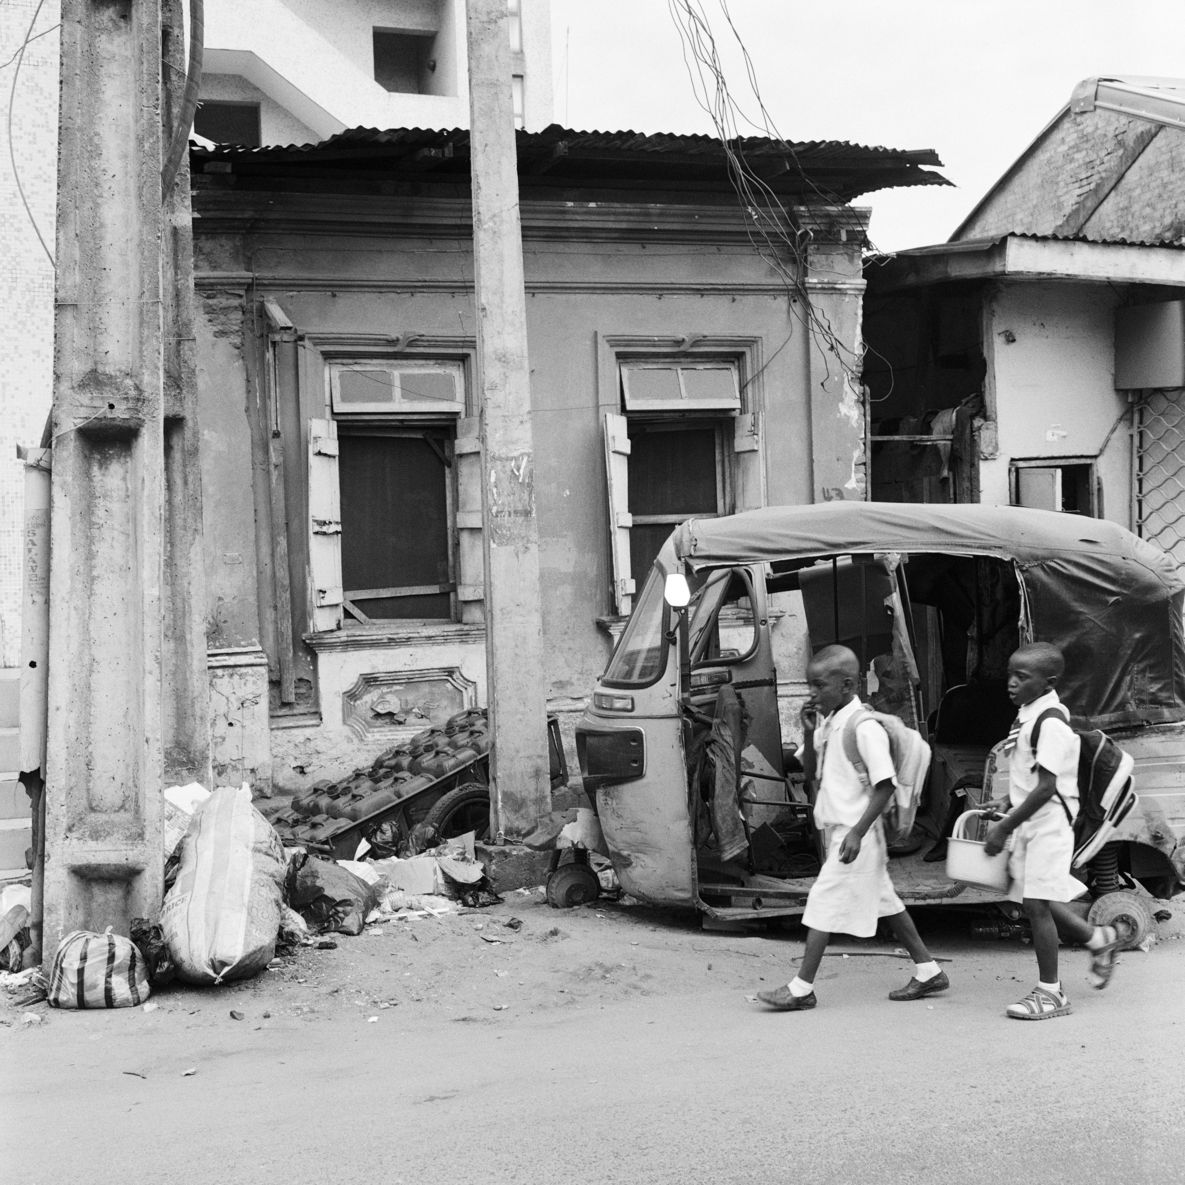 Schwarz Weiß Fotografie: Akinbode Akinbiyi, Lagos, 2016, Aus der Serie: Lagos: All Roads, seit den 1980er Jahren